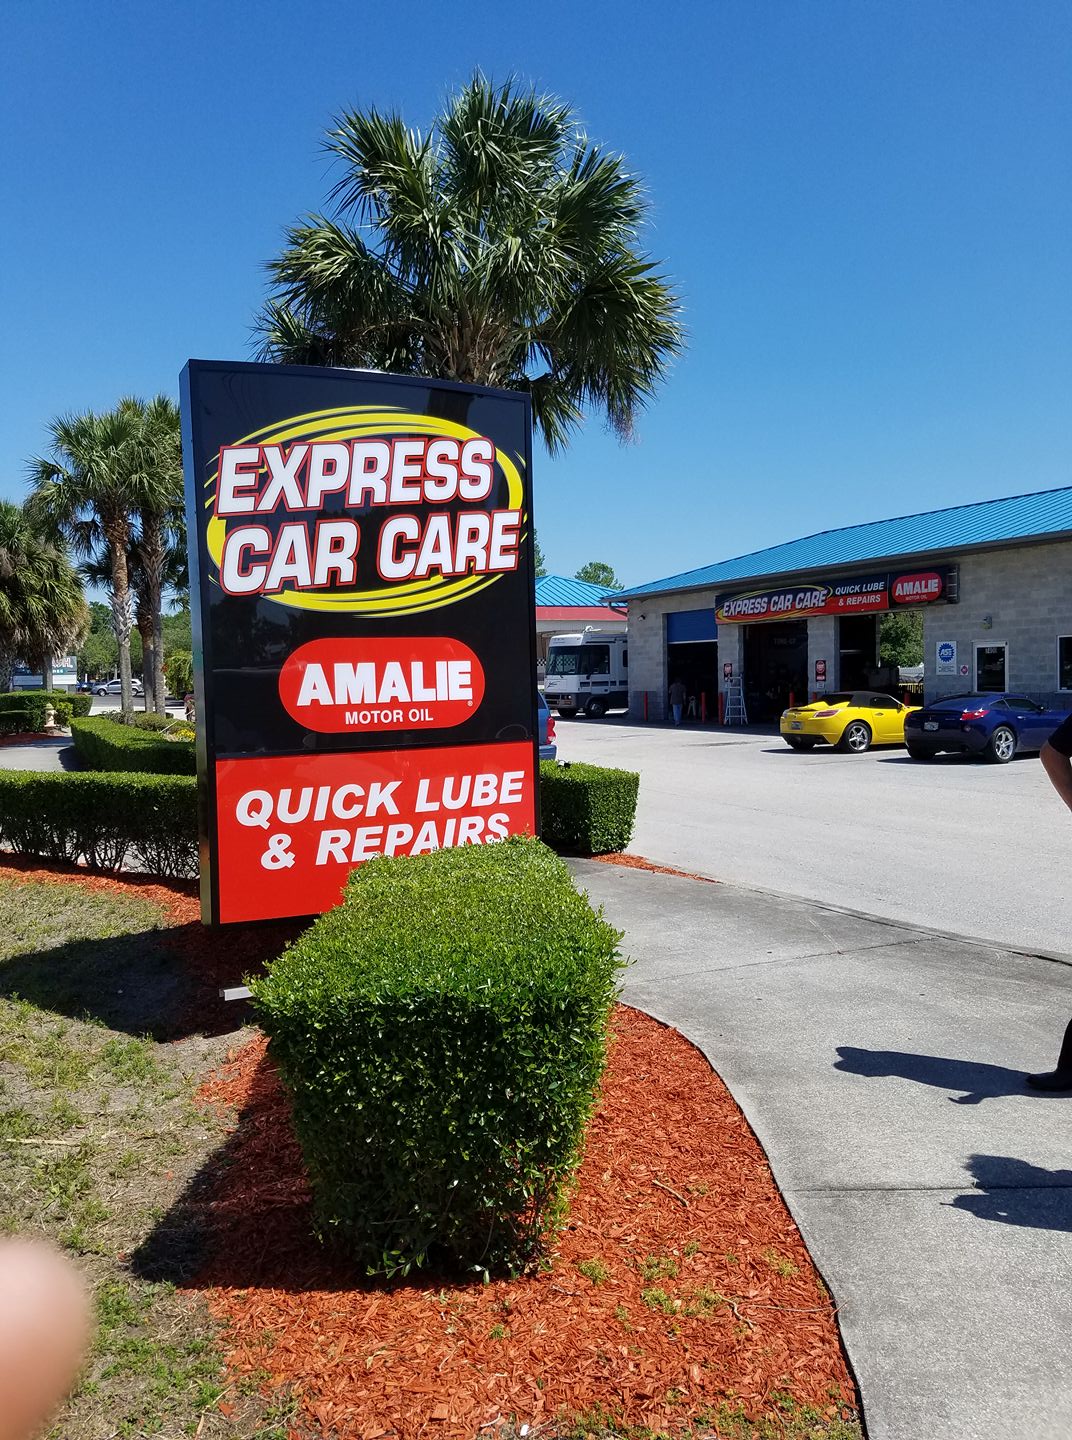 Express Car Care